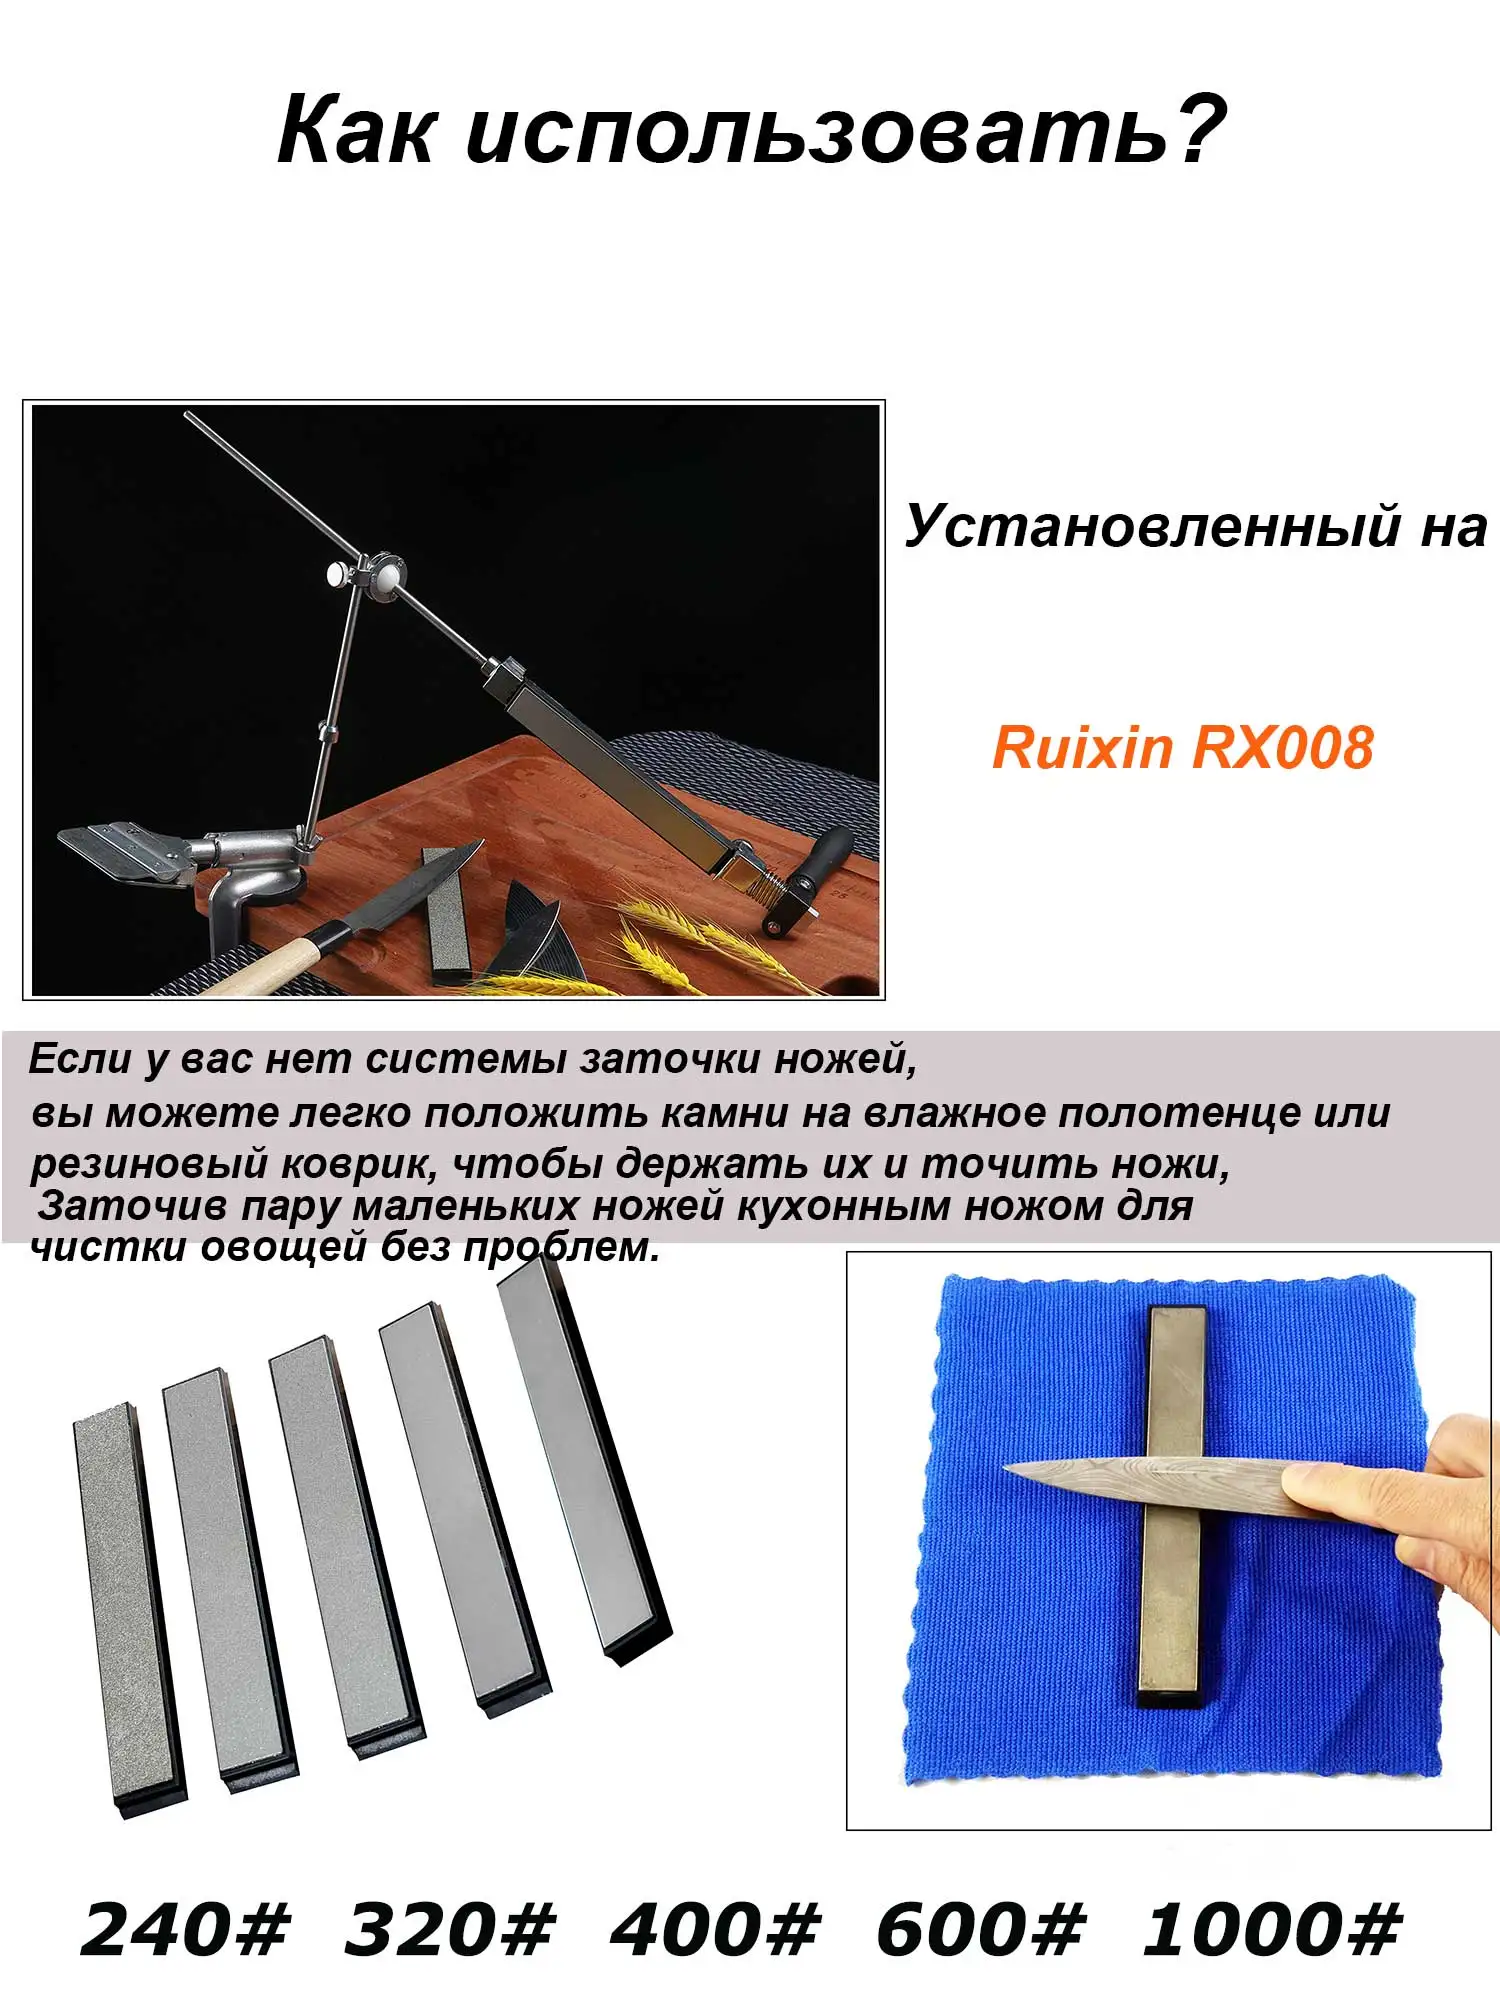 Набор алмазных точильных камней для ножей, 5 шт., 240 #320 #400 #600 #1000 #, подходит для Edge pro Apex Ruixin pro rx008